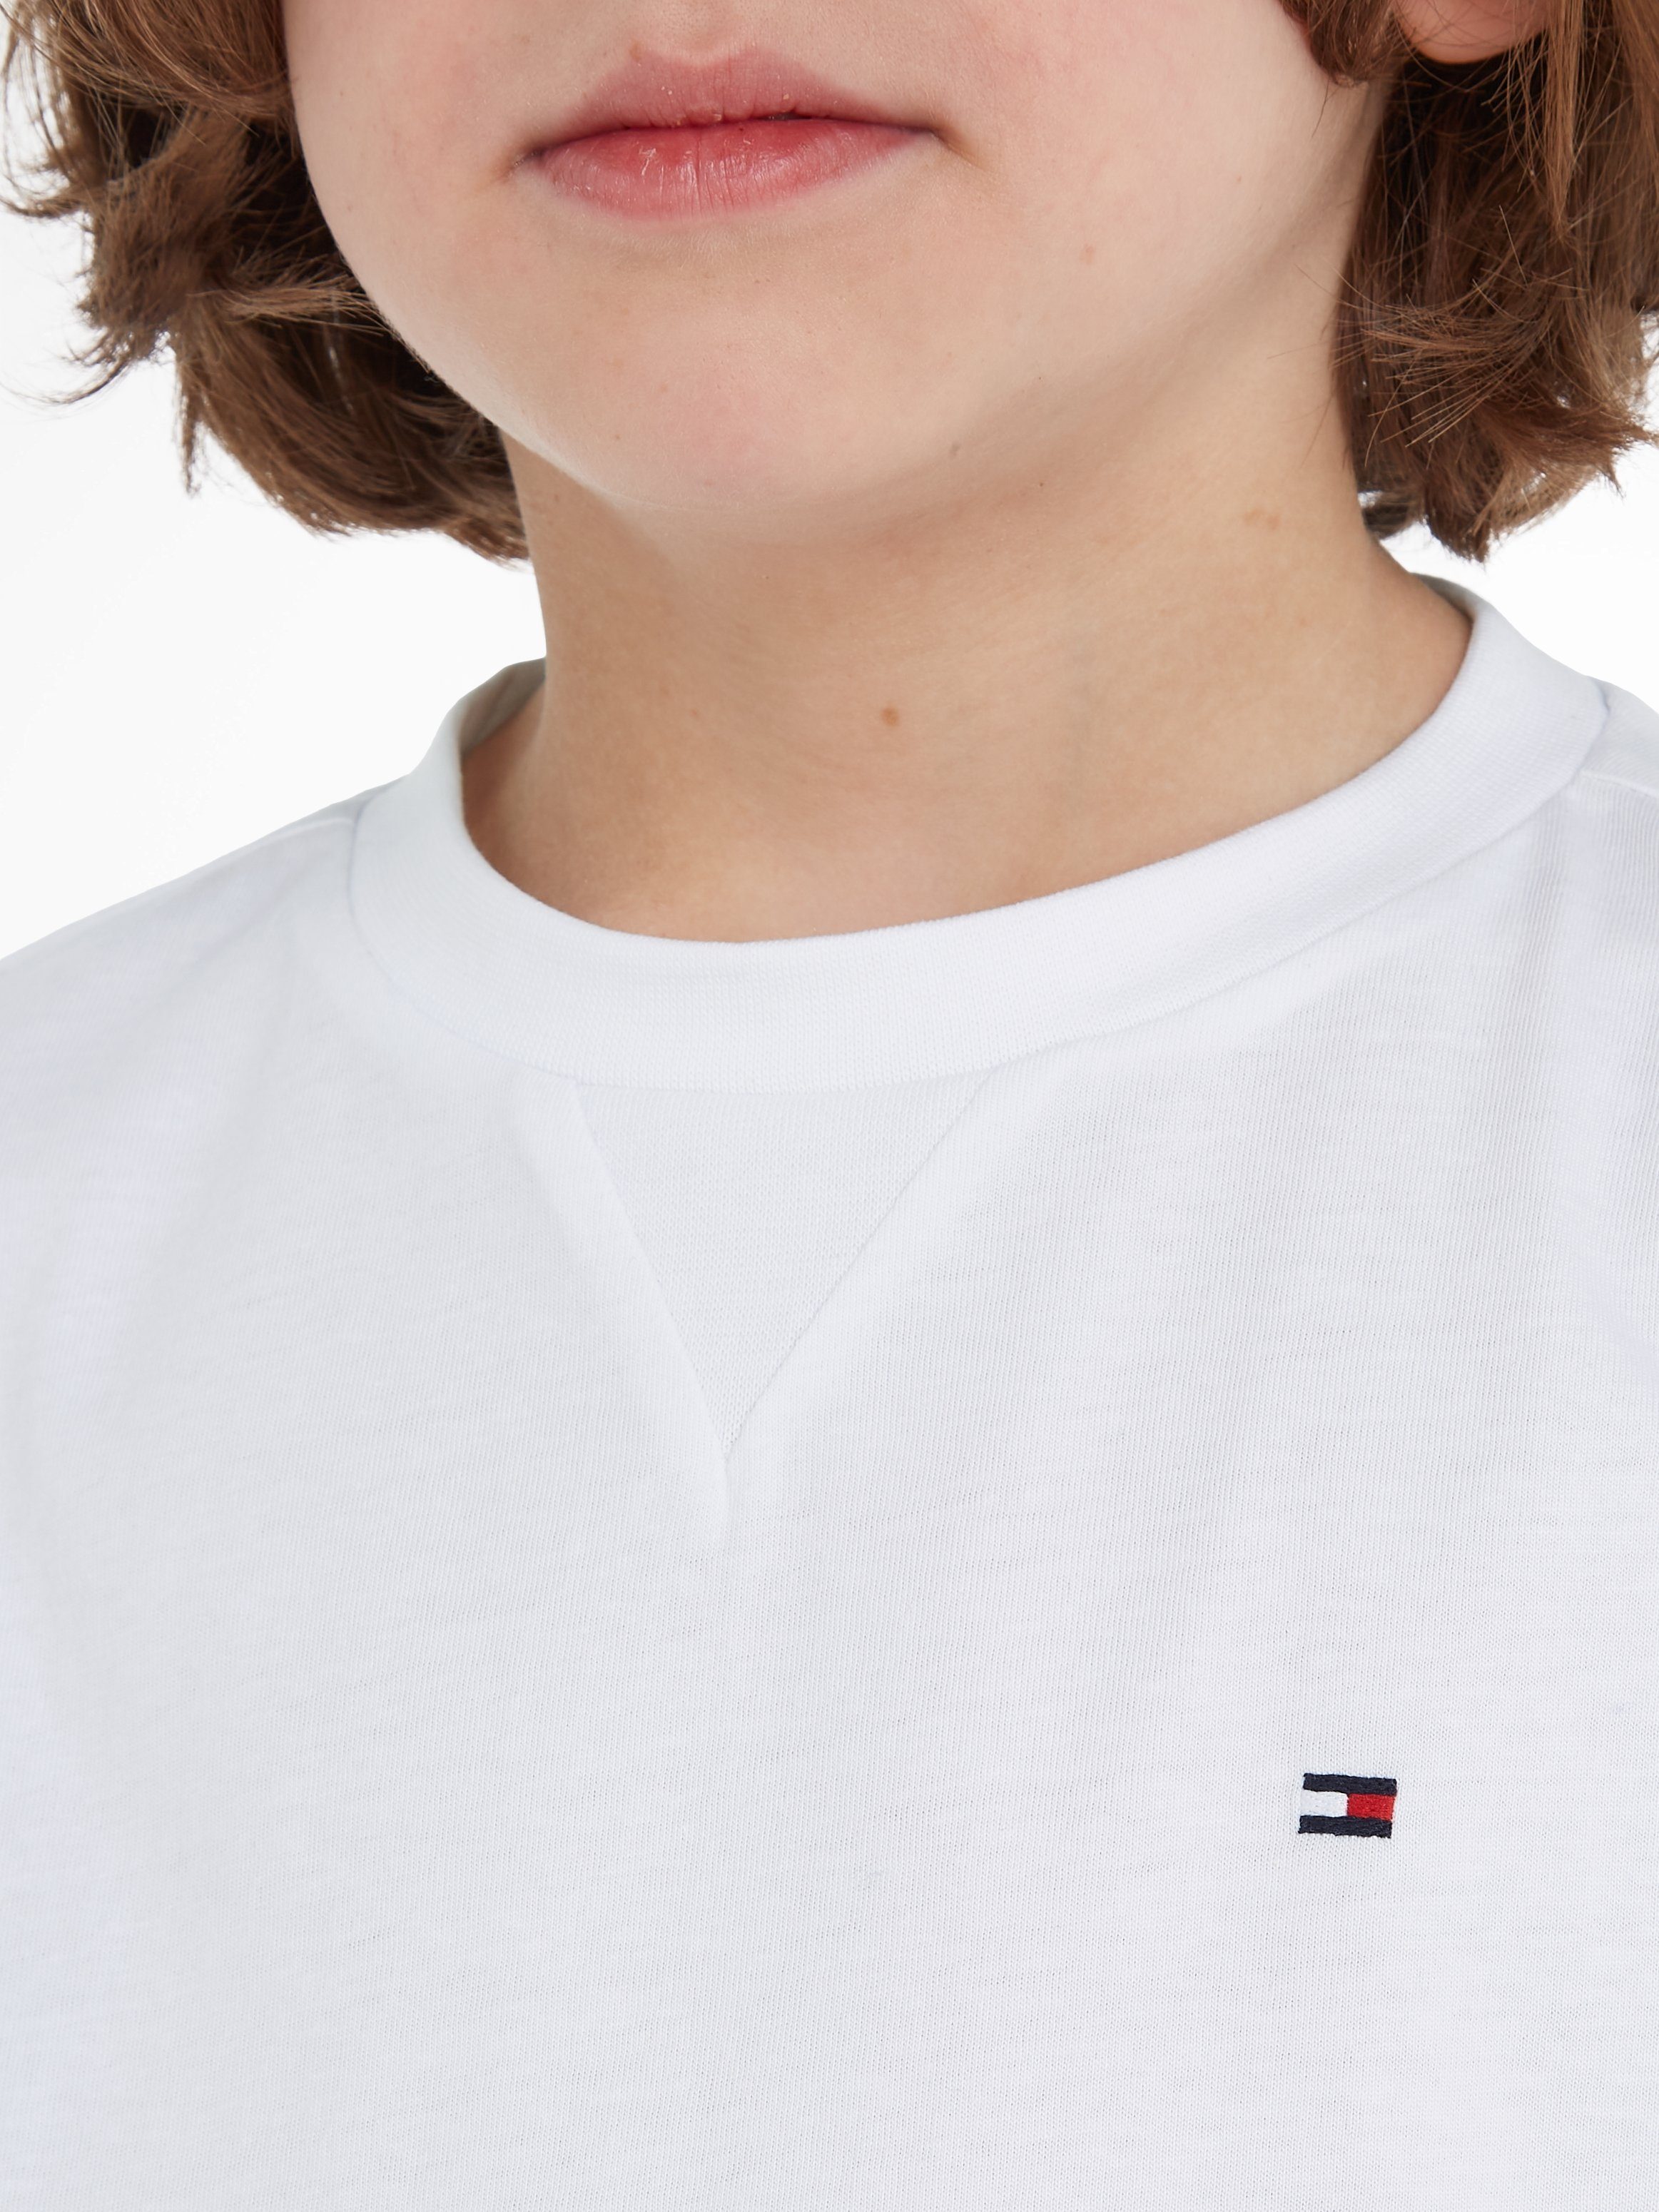 ESSENTIAL T-Shirt 2 S/S bis Jahre Hilfiger Tommy Baby white TEE